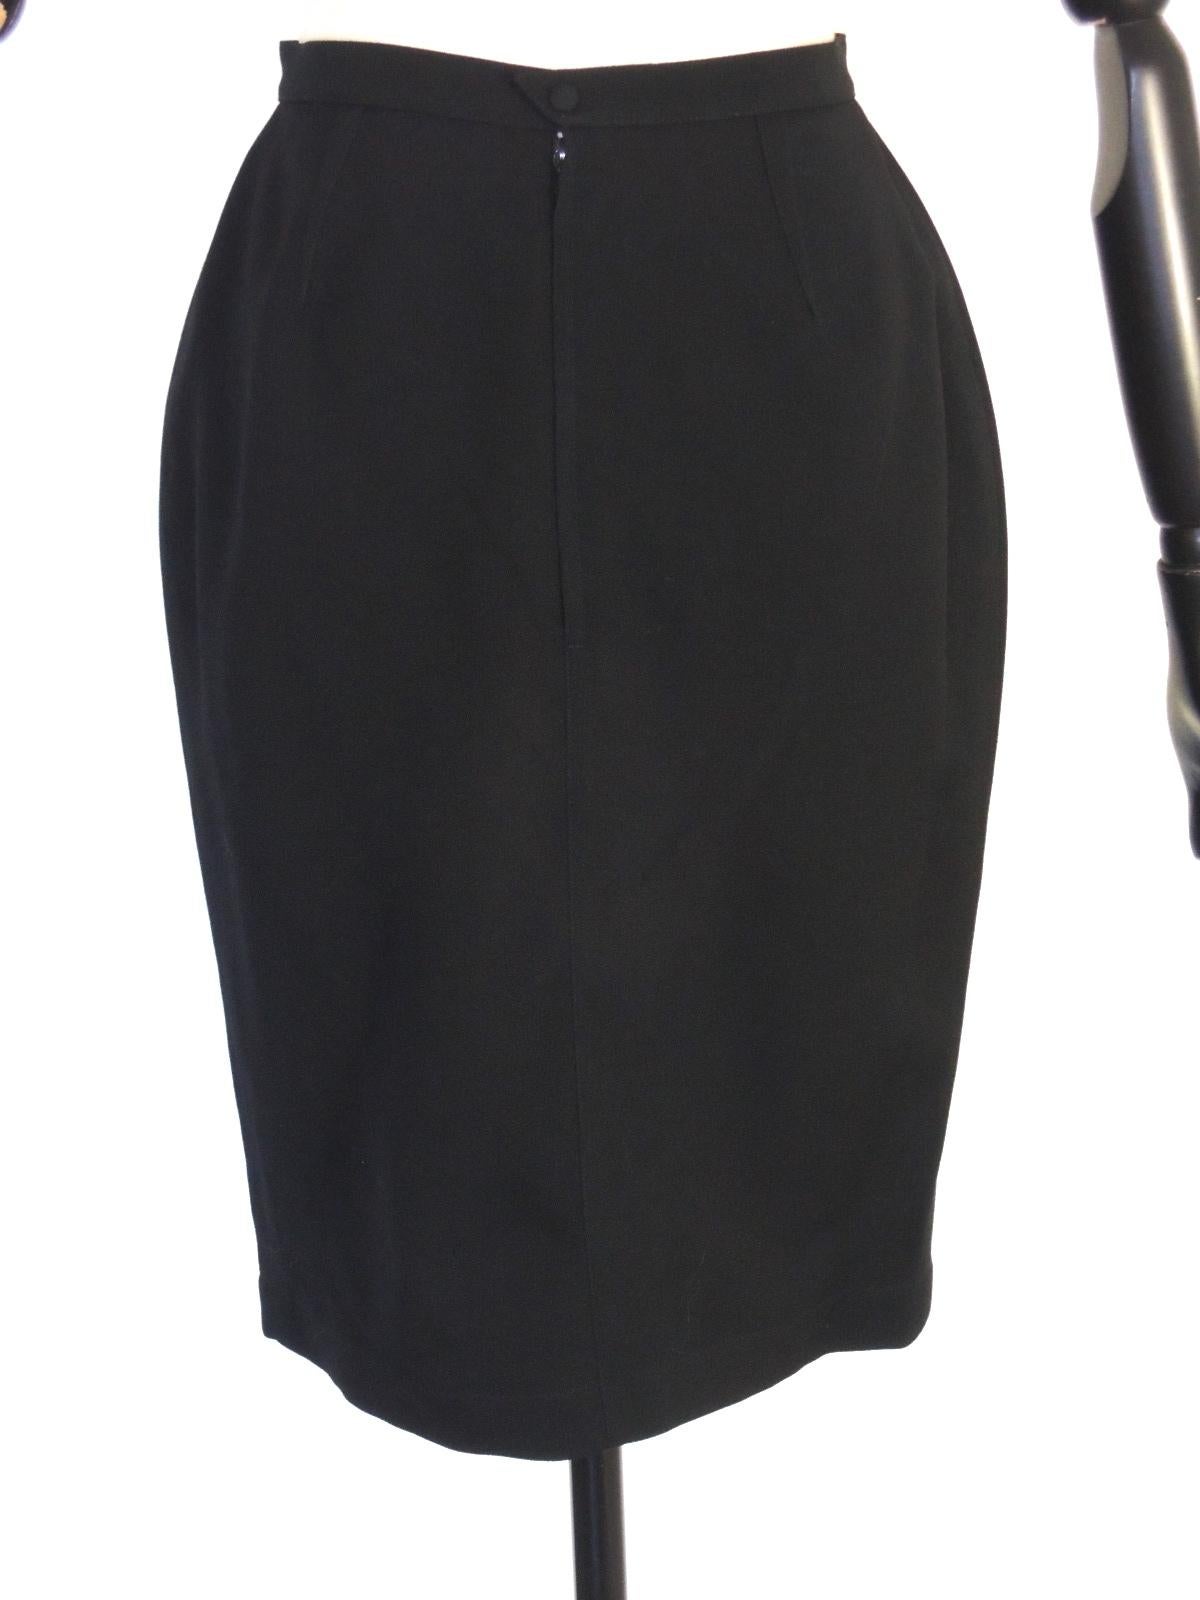 Thierry Mugler Vintage Black Embellished Skirt Suit For Sale 9